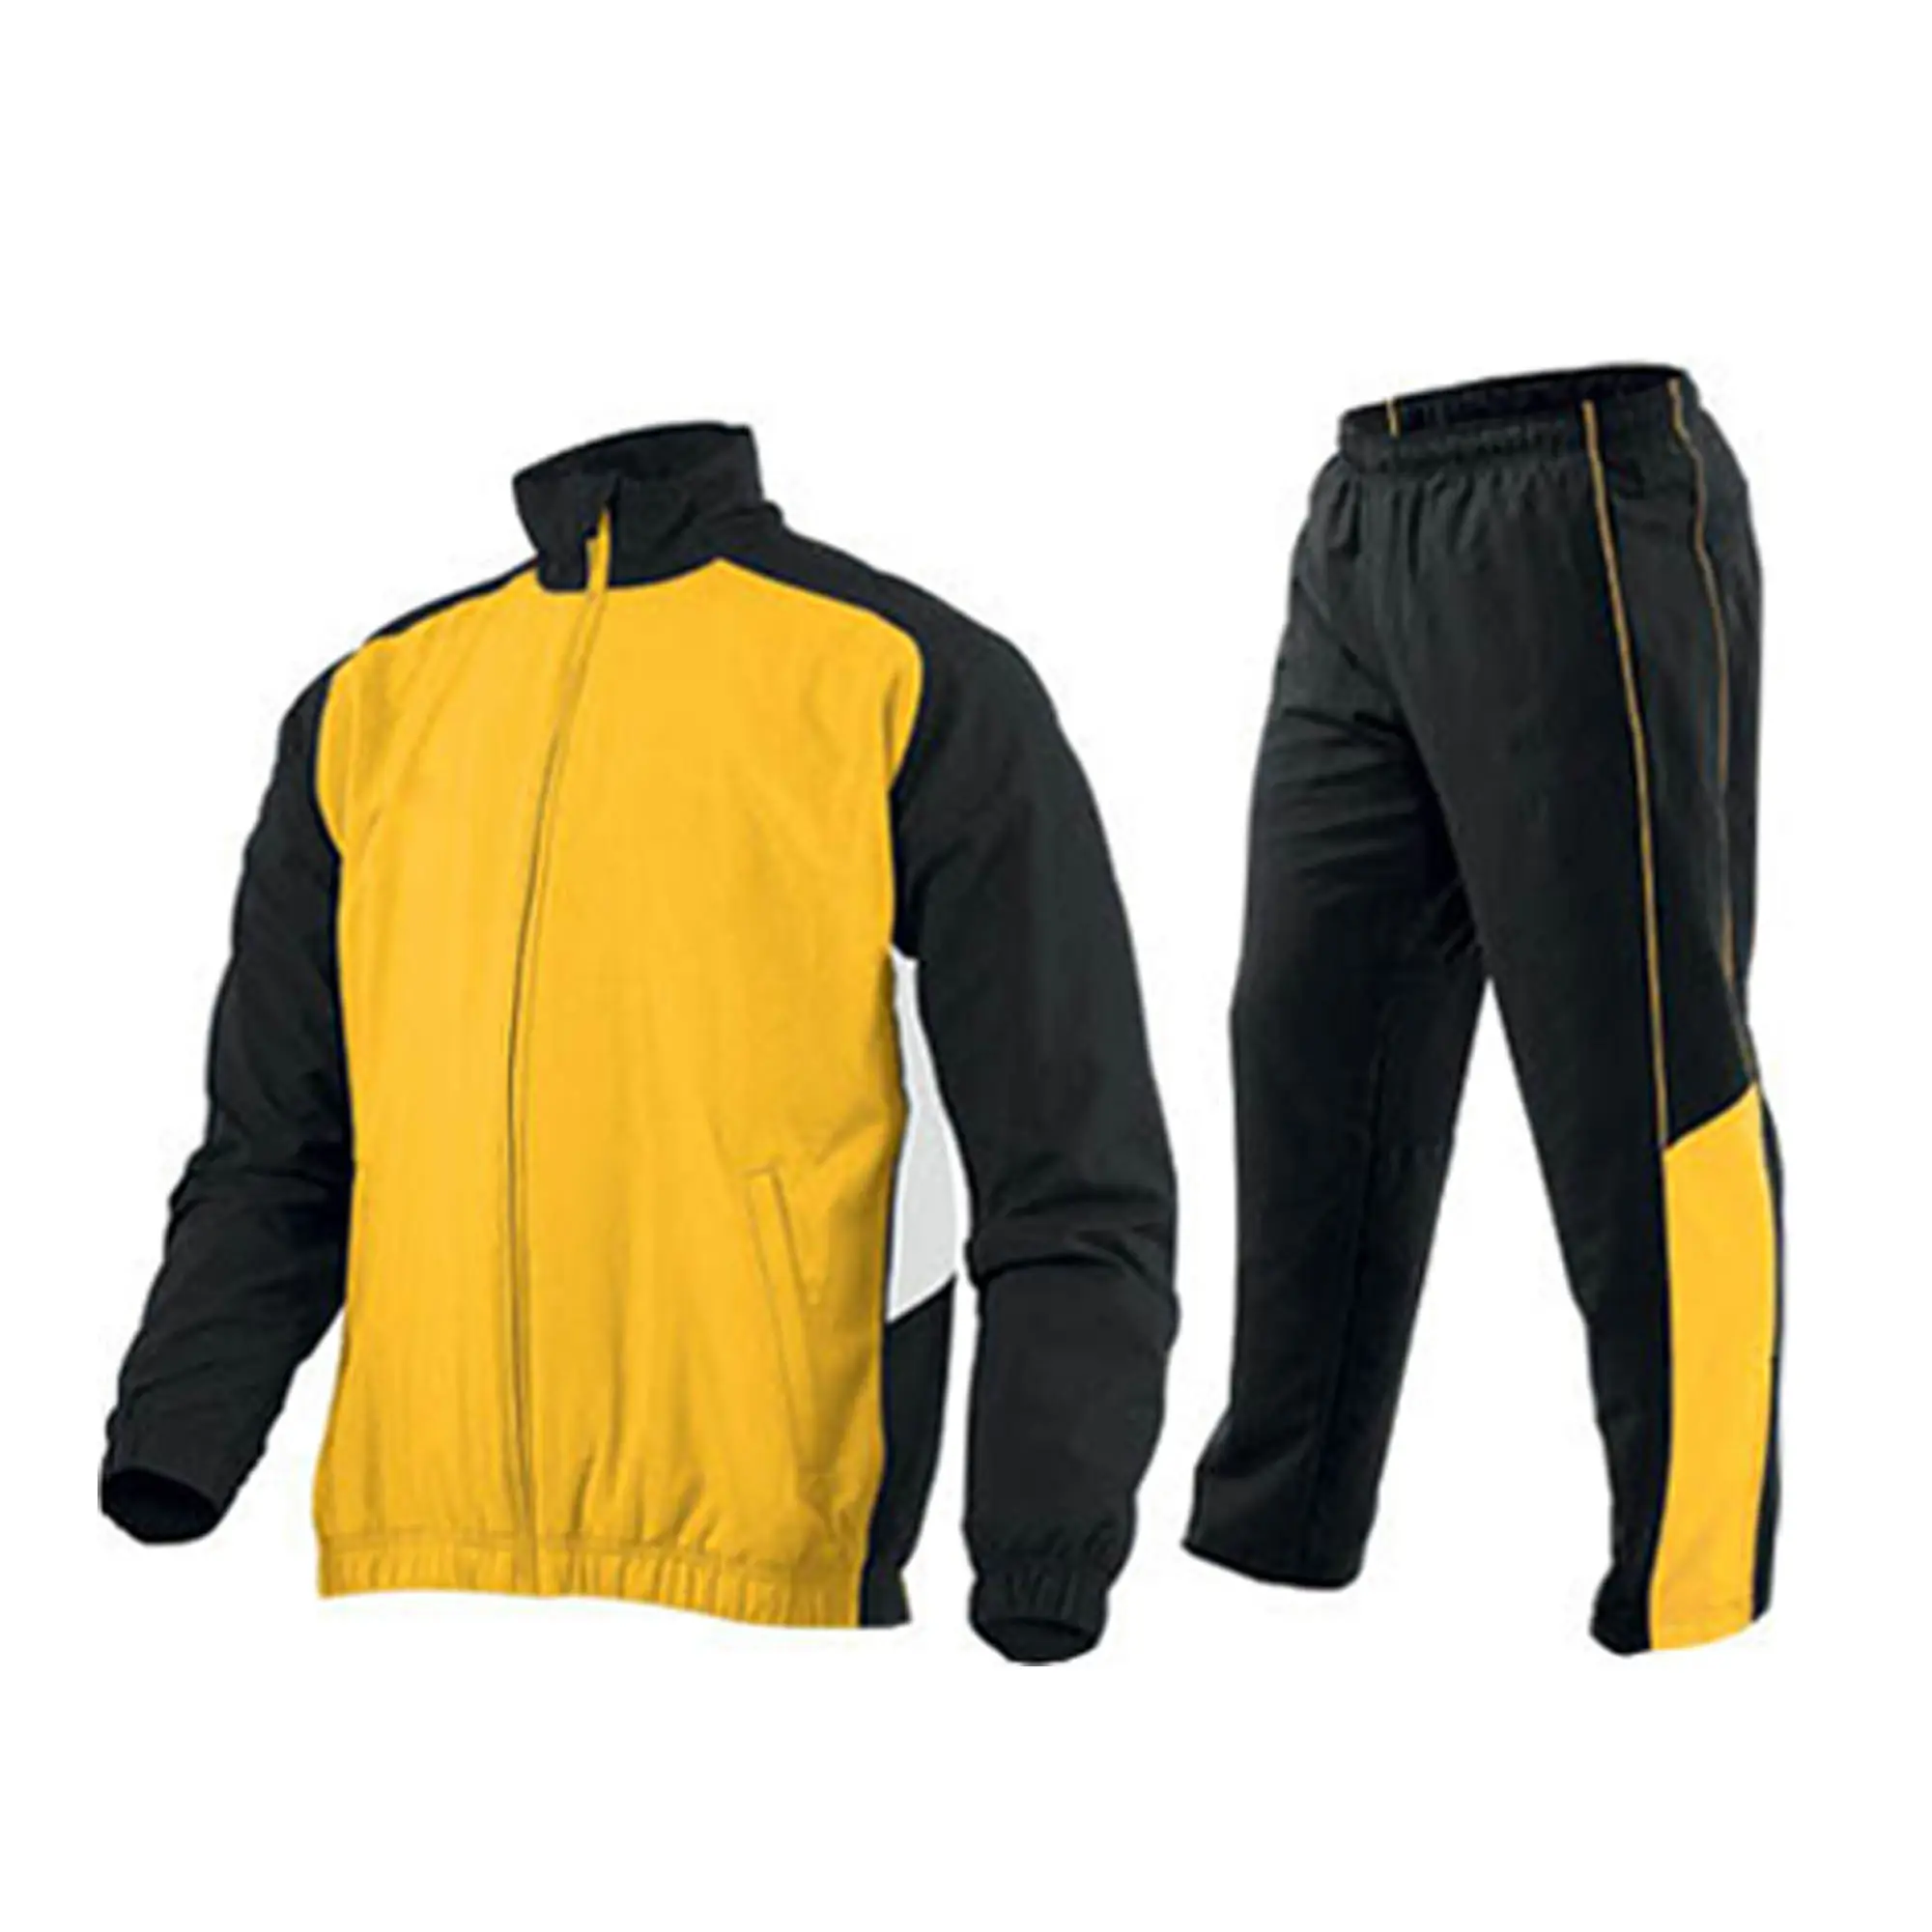 Conjunto de roupas esportivas urbanas, trajes unissex, respirável e sustentável, monitoramento esportivo, logotipo personalizado, 100% algodão